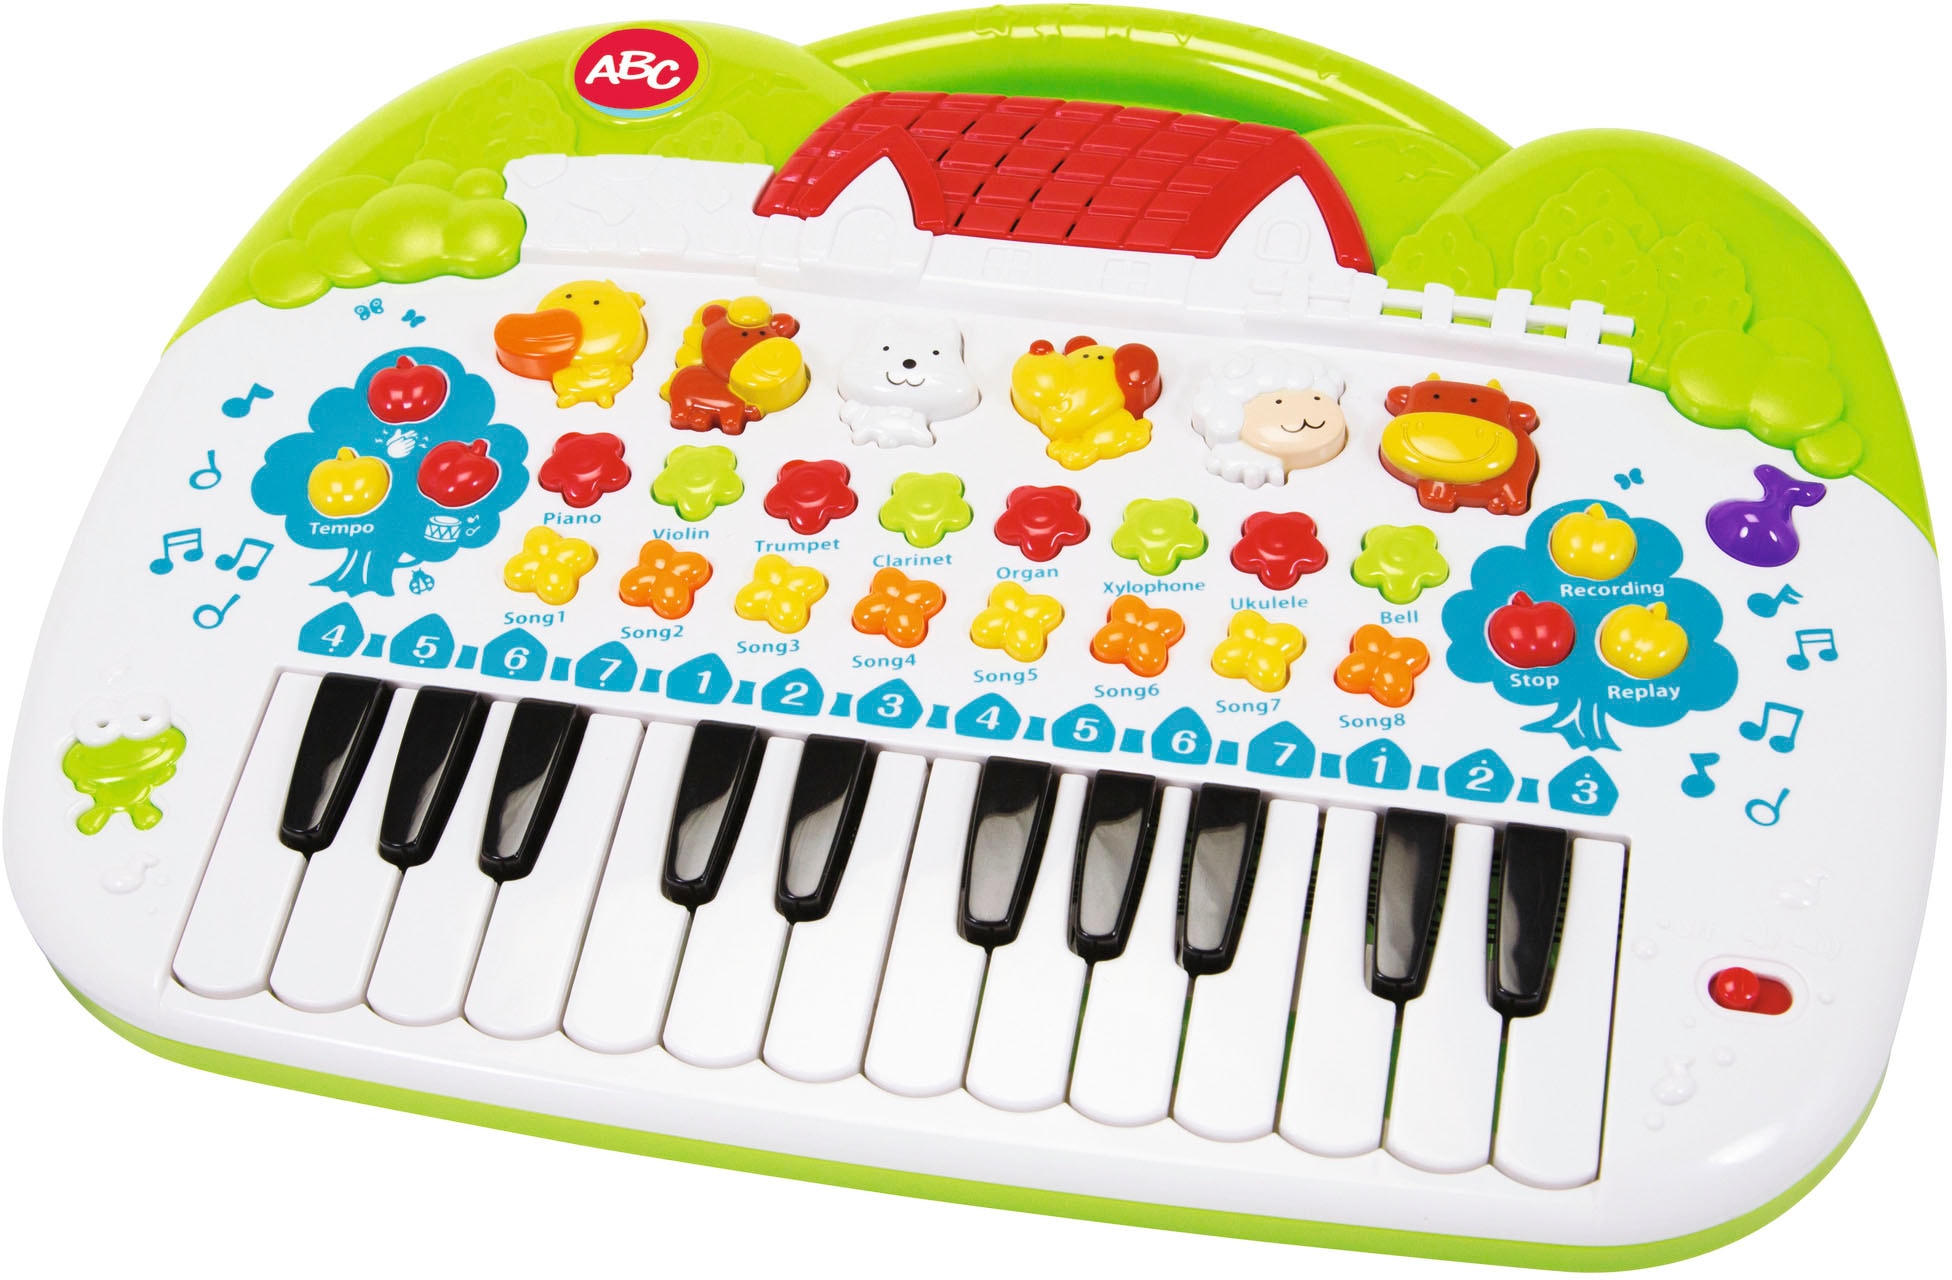 SIMBA Lernspielzeug »ABC Tier-Keyboard«, mit Licht und Sound